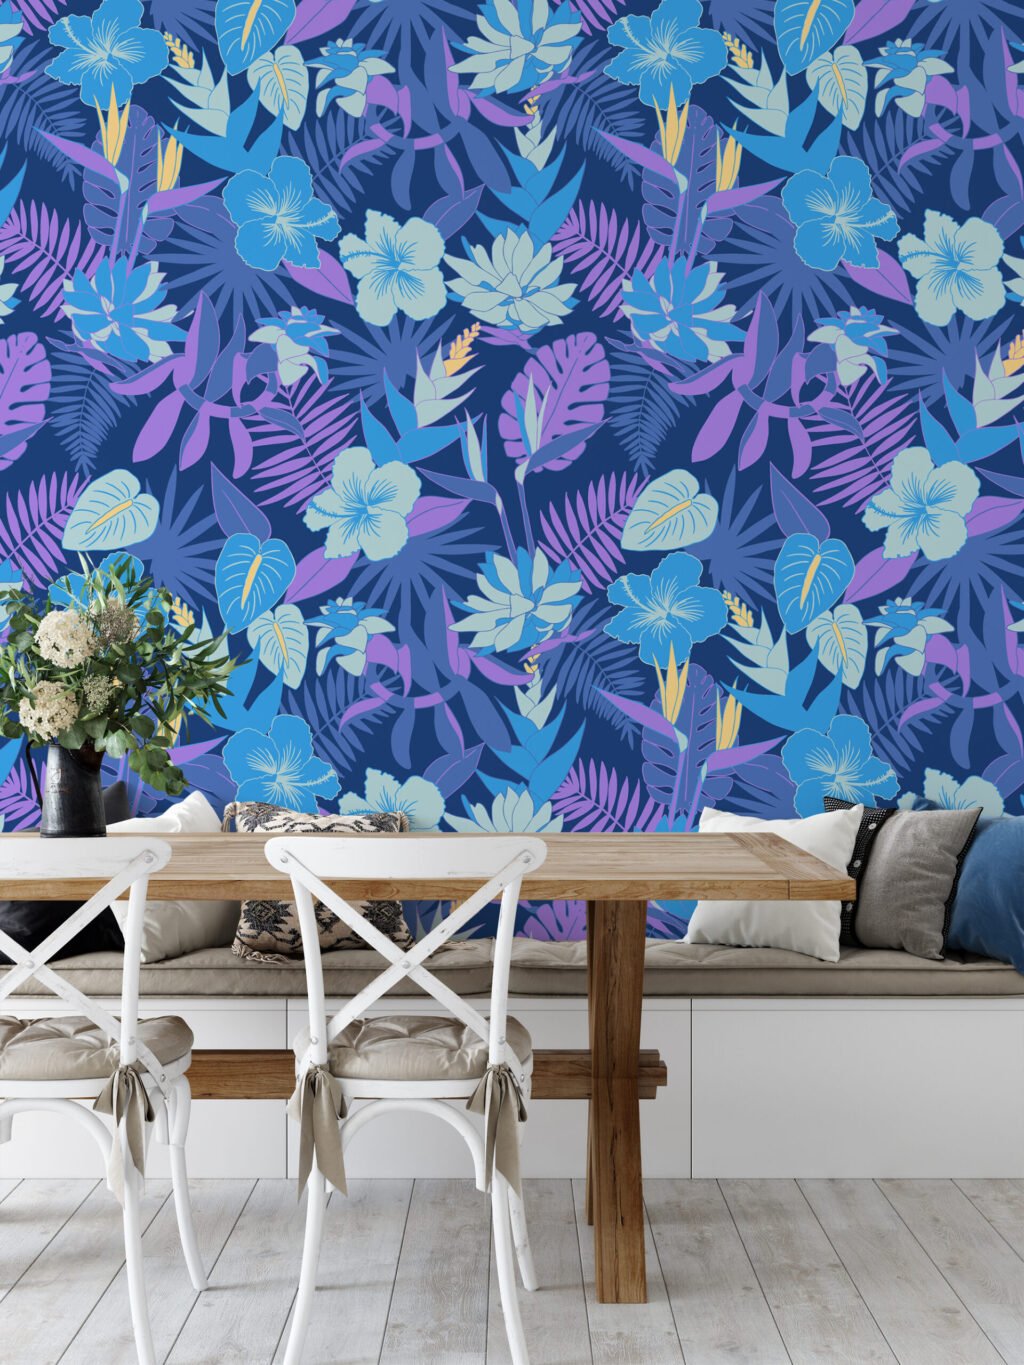 Mavi ve Mor Renkli Çiçekli Duvar Kağıdı, Canlı Tropik Gece Çiçekleri 3D Duvar Kağıdı Çiçekli Duvar Kağıtları 2